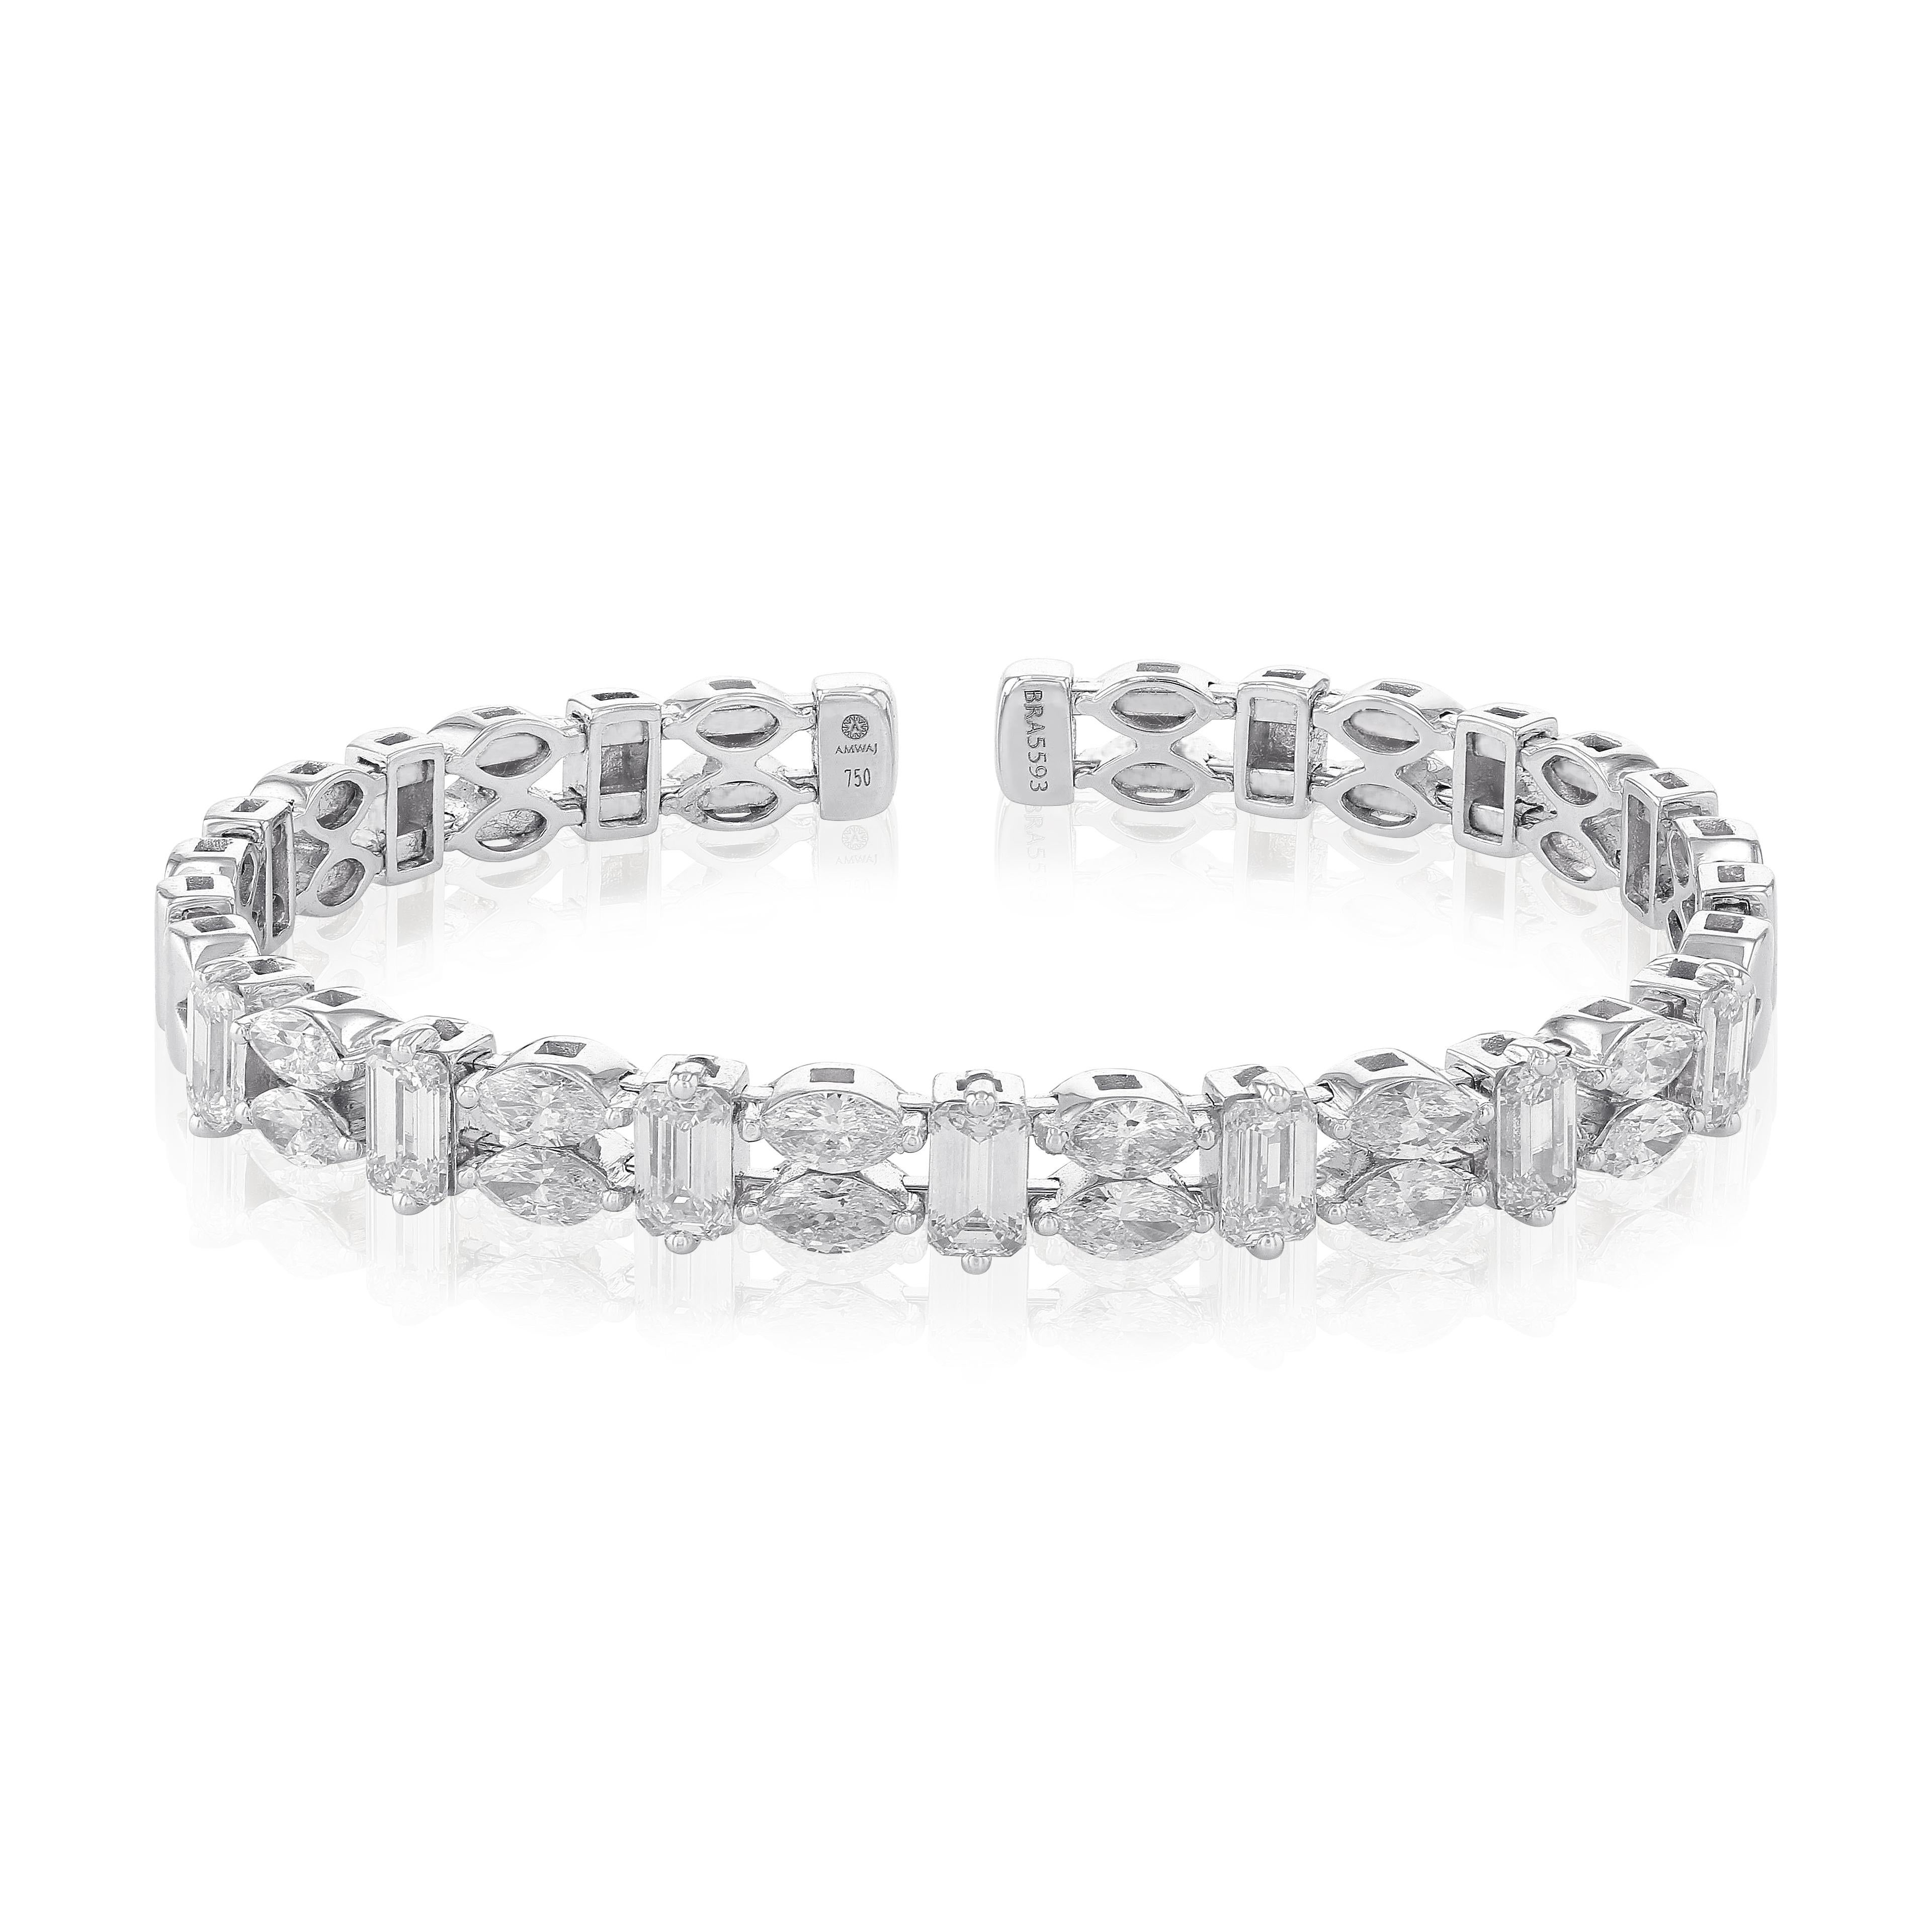 Bracelet ornemental simple et élégant en or blanc 18 carats et diamants taille brillant de type Marquise et baguette de la marque Amwaj jewelry. Ce bracelet finement détaillé, géométrique et charmant, ajoute un éclat magnifique à toute tenue. Les